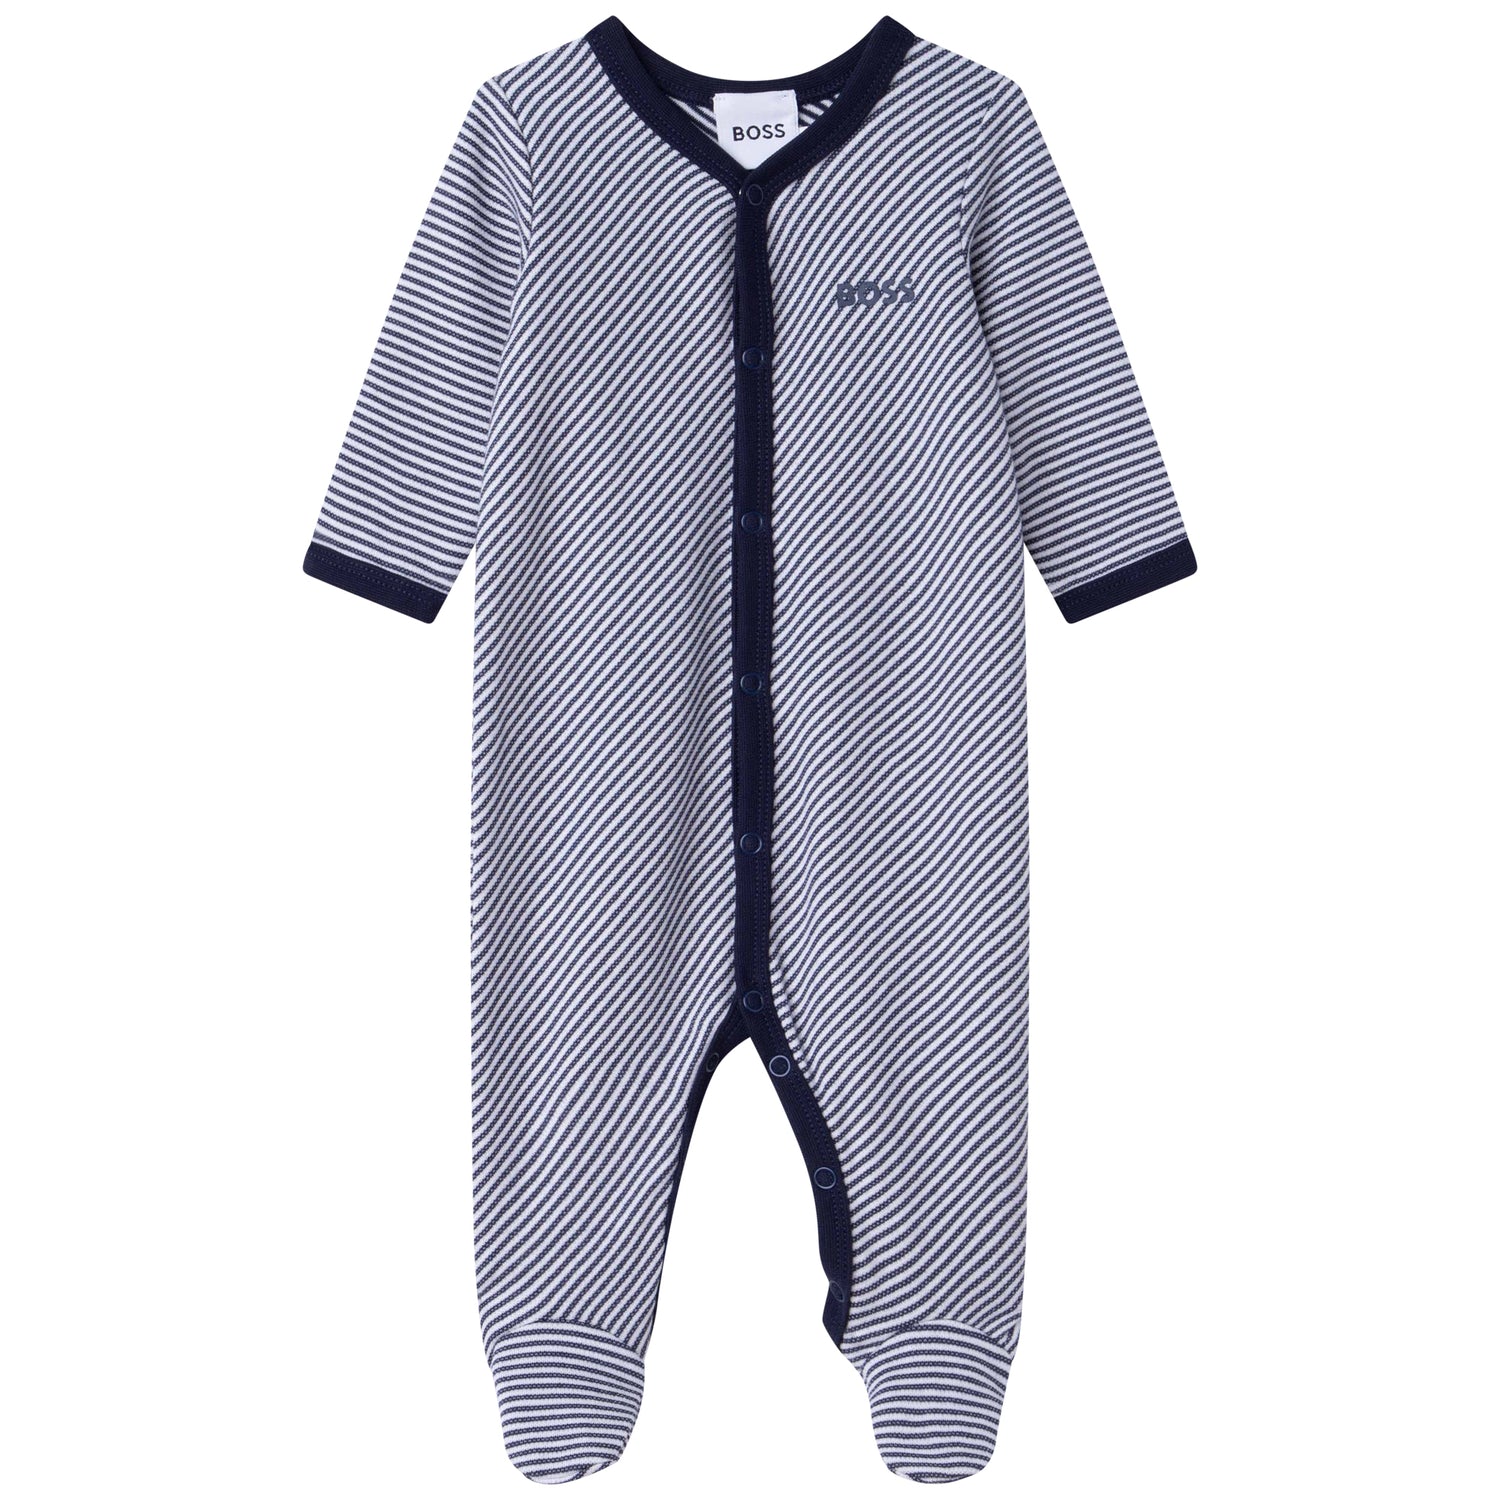 Boss Pyjamas Style: J97197